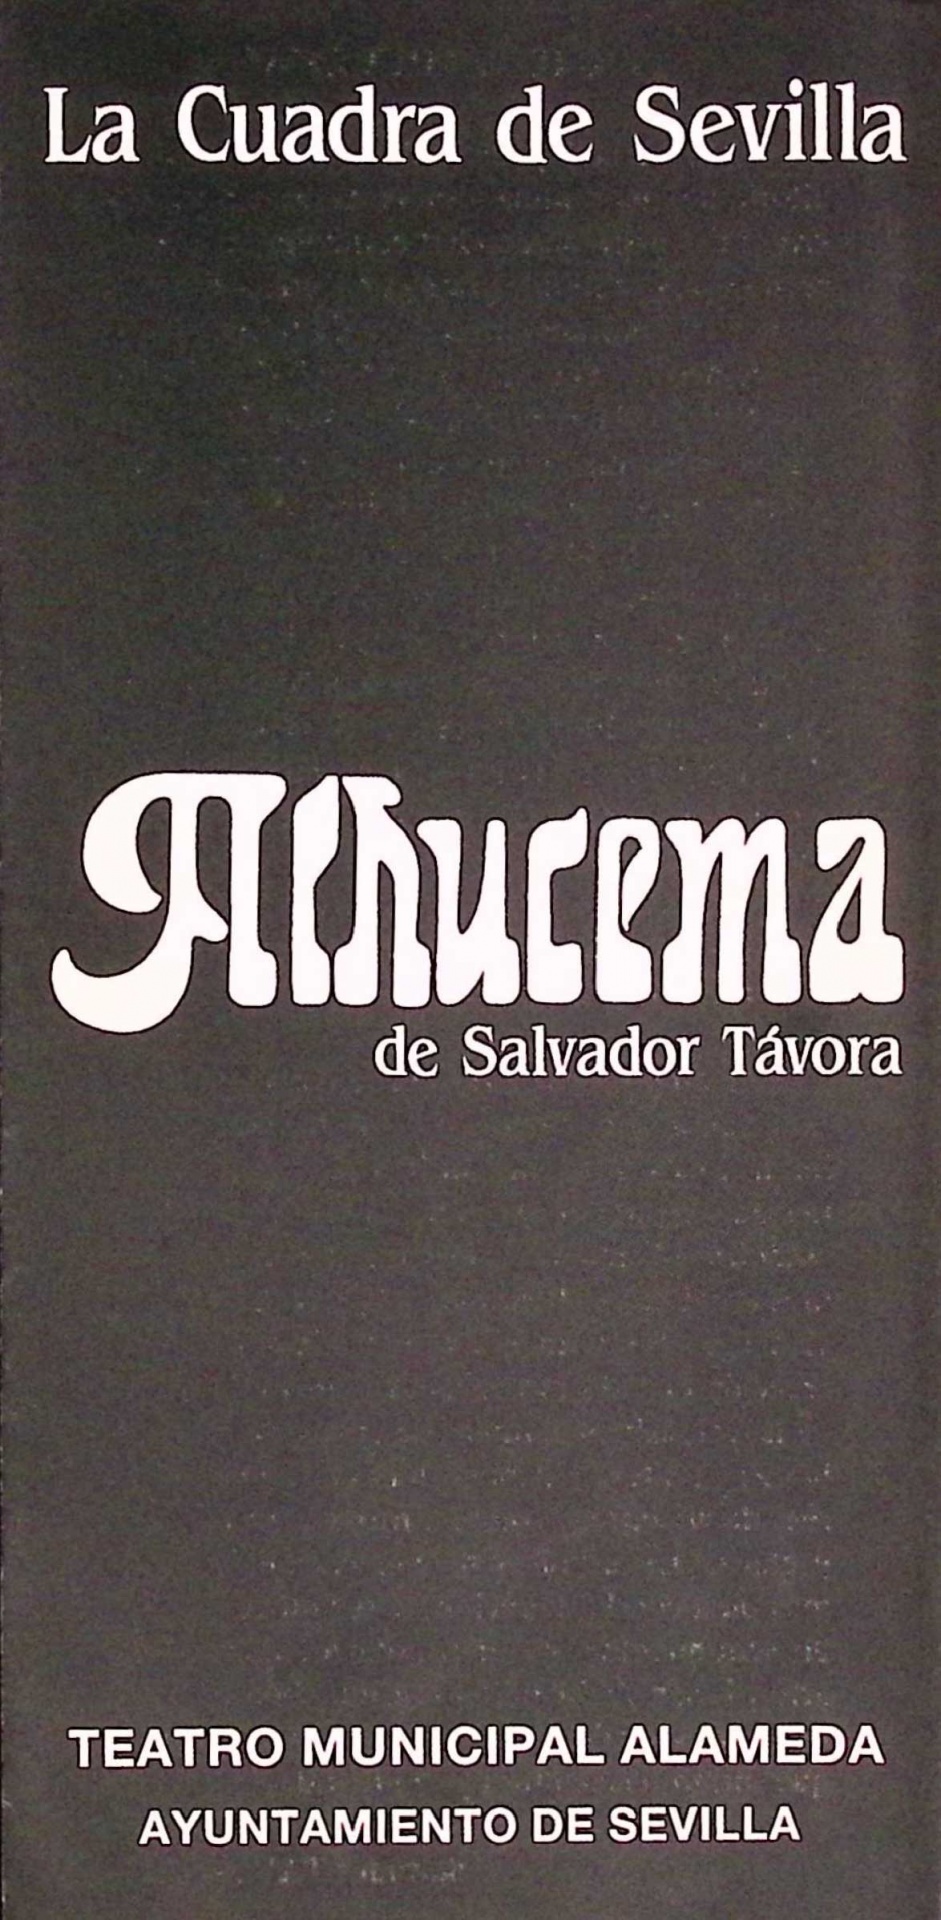 Alhucema de Salvador Távora. La Cuadra de Sevilla